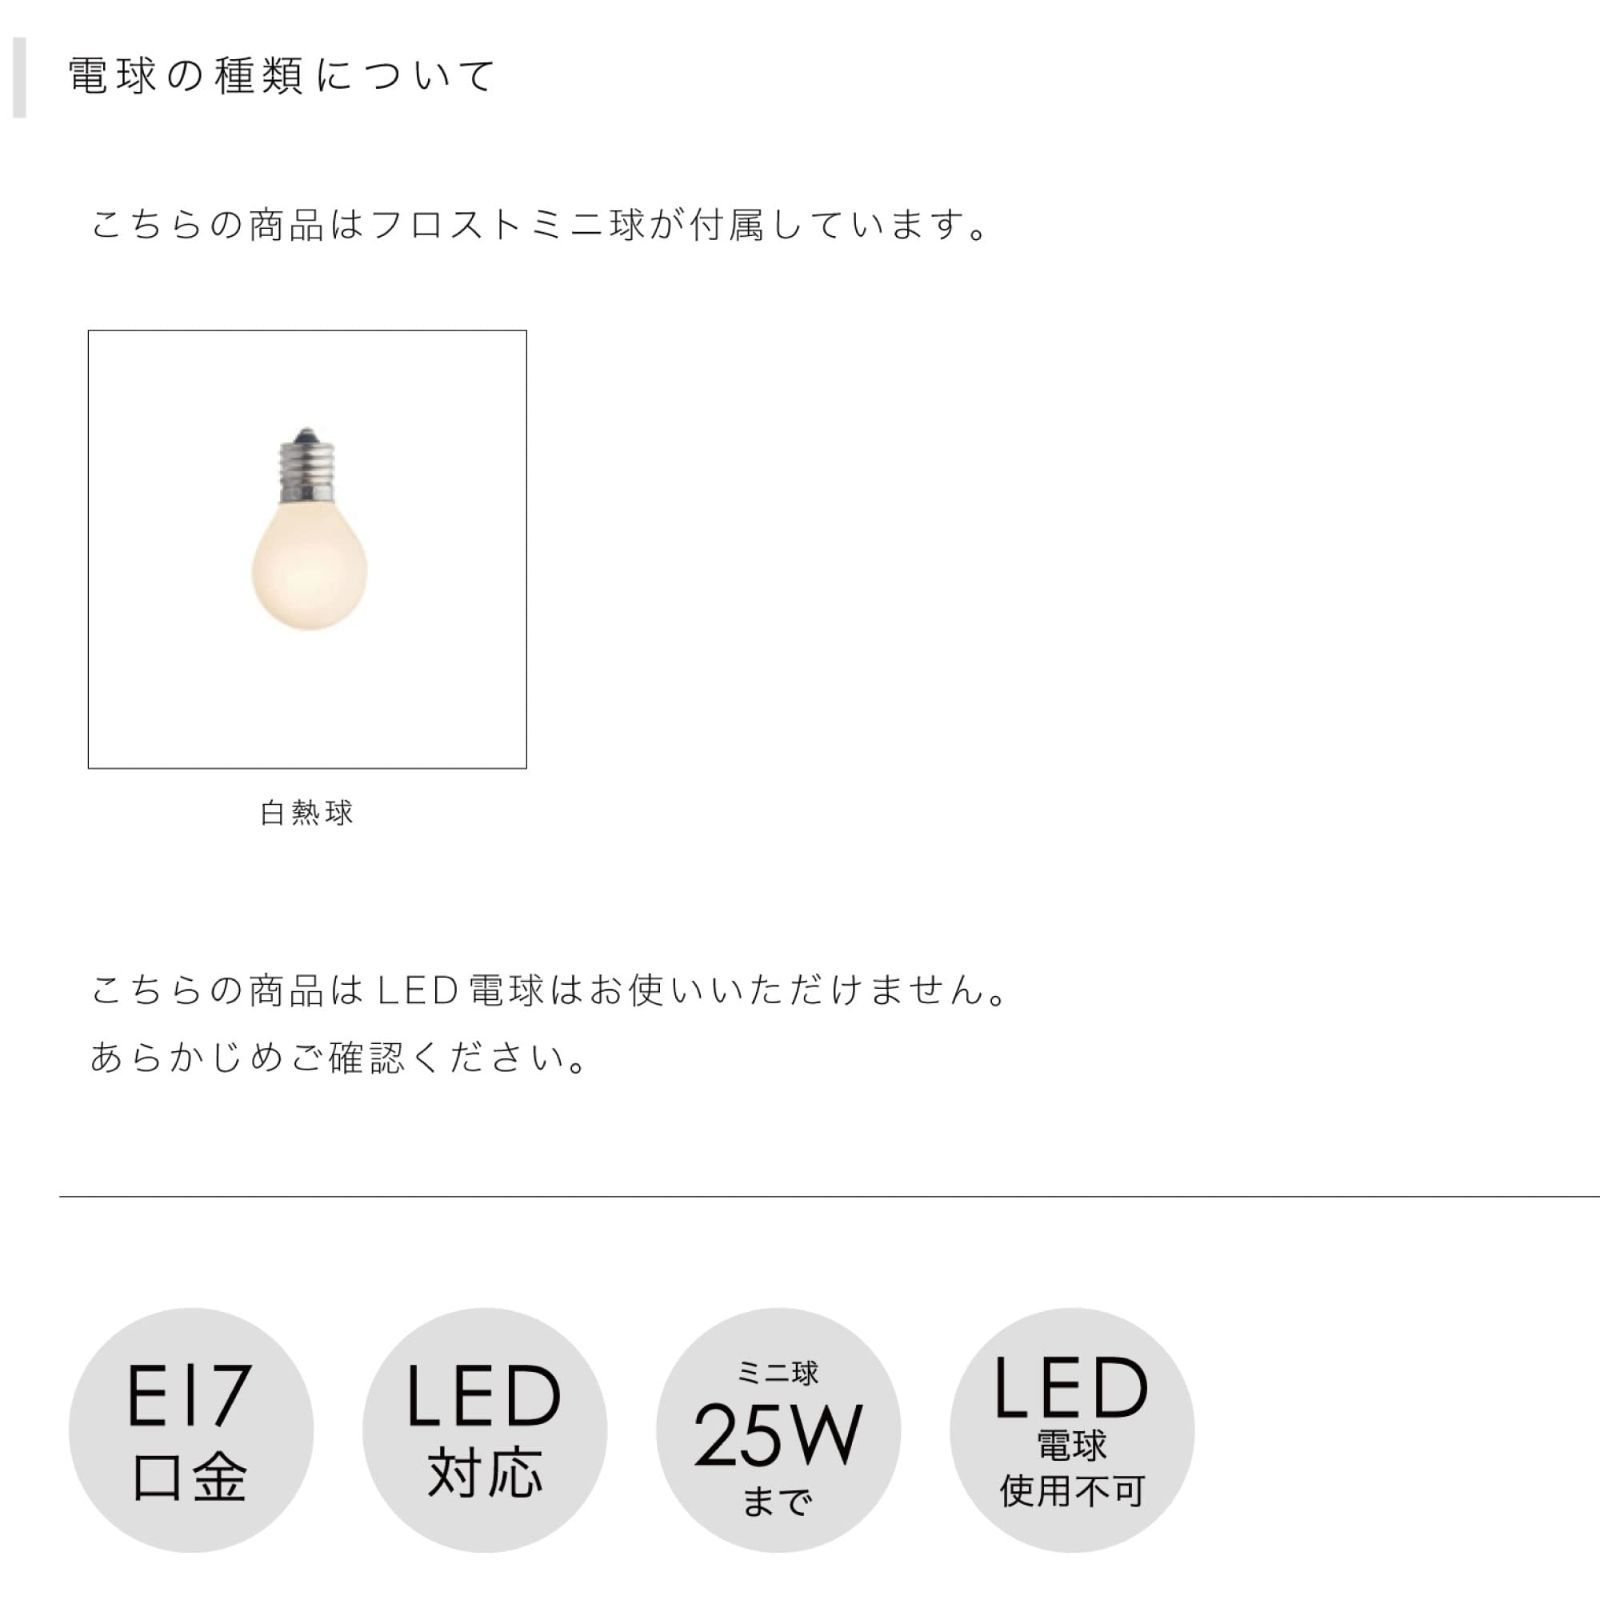 直送商品 メルカリ限定LT-2103GD クラシック CLASSIC ホワイトミニ球付 ヴ 7802円 ライト/照明